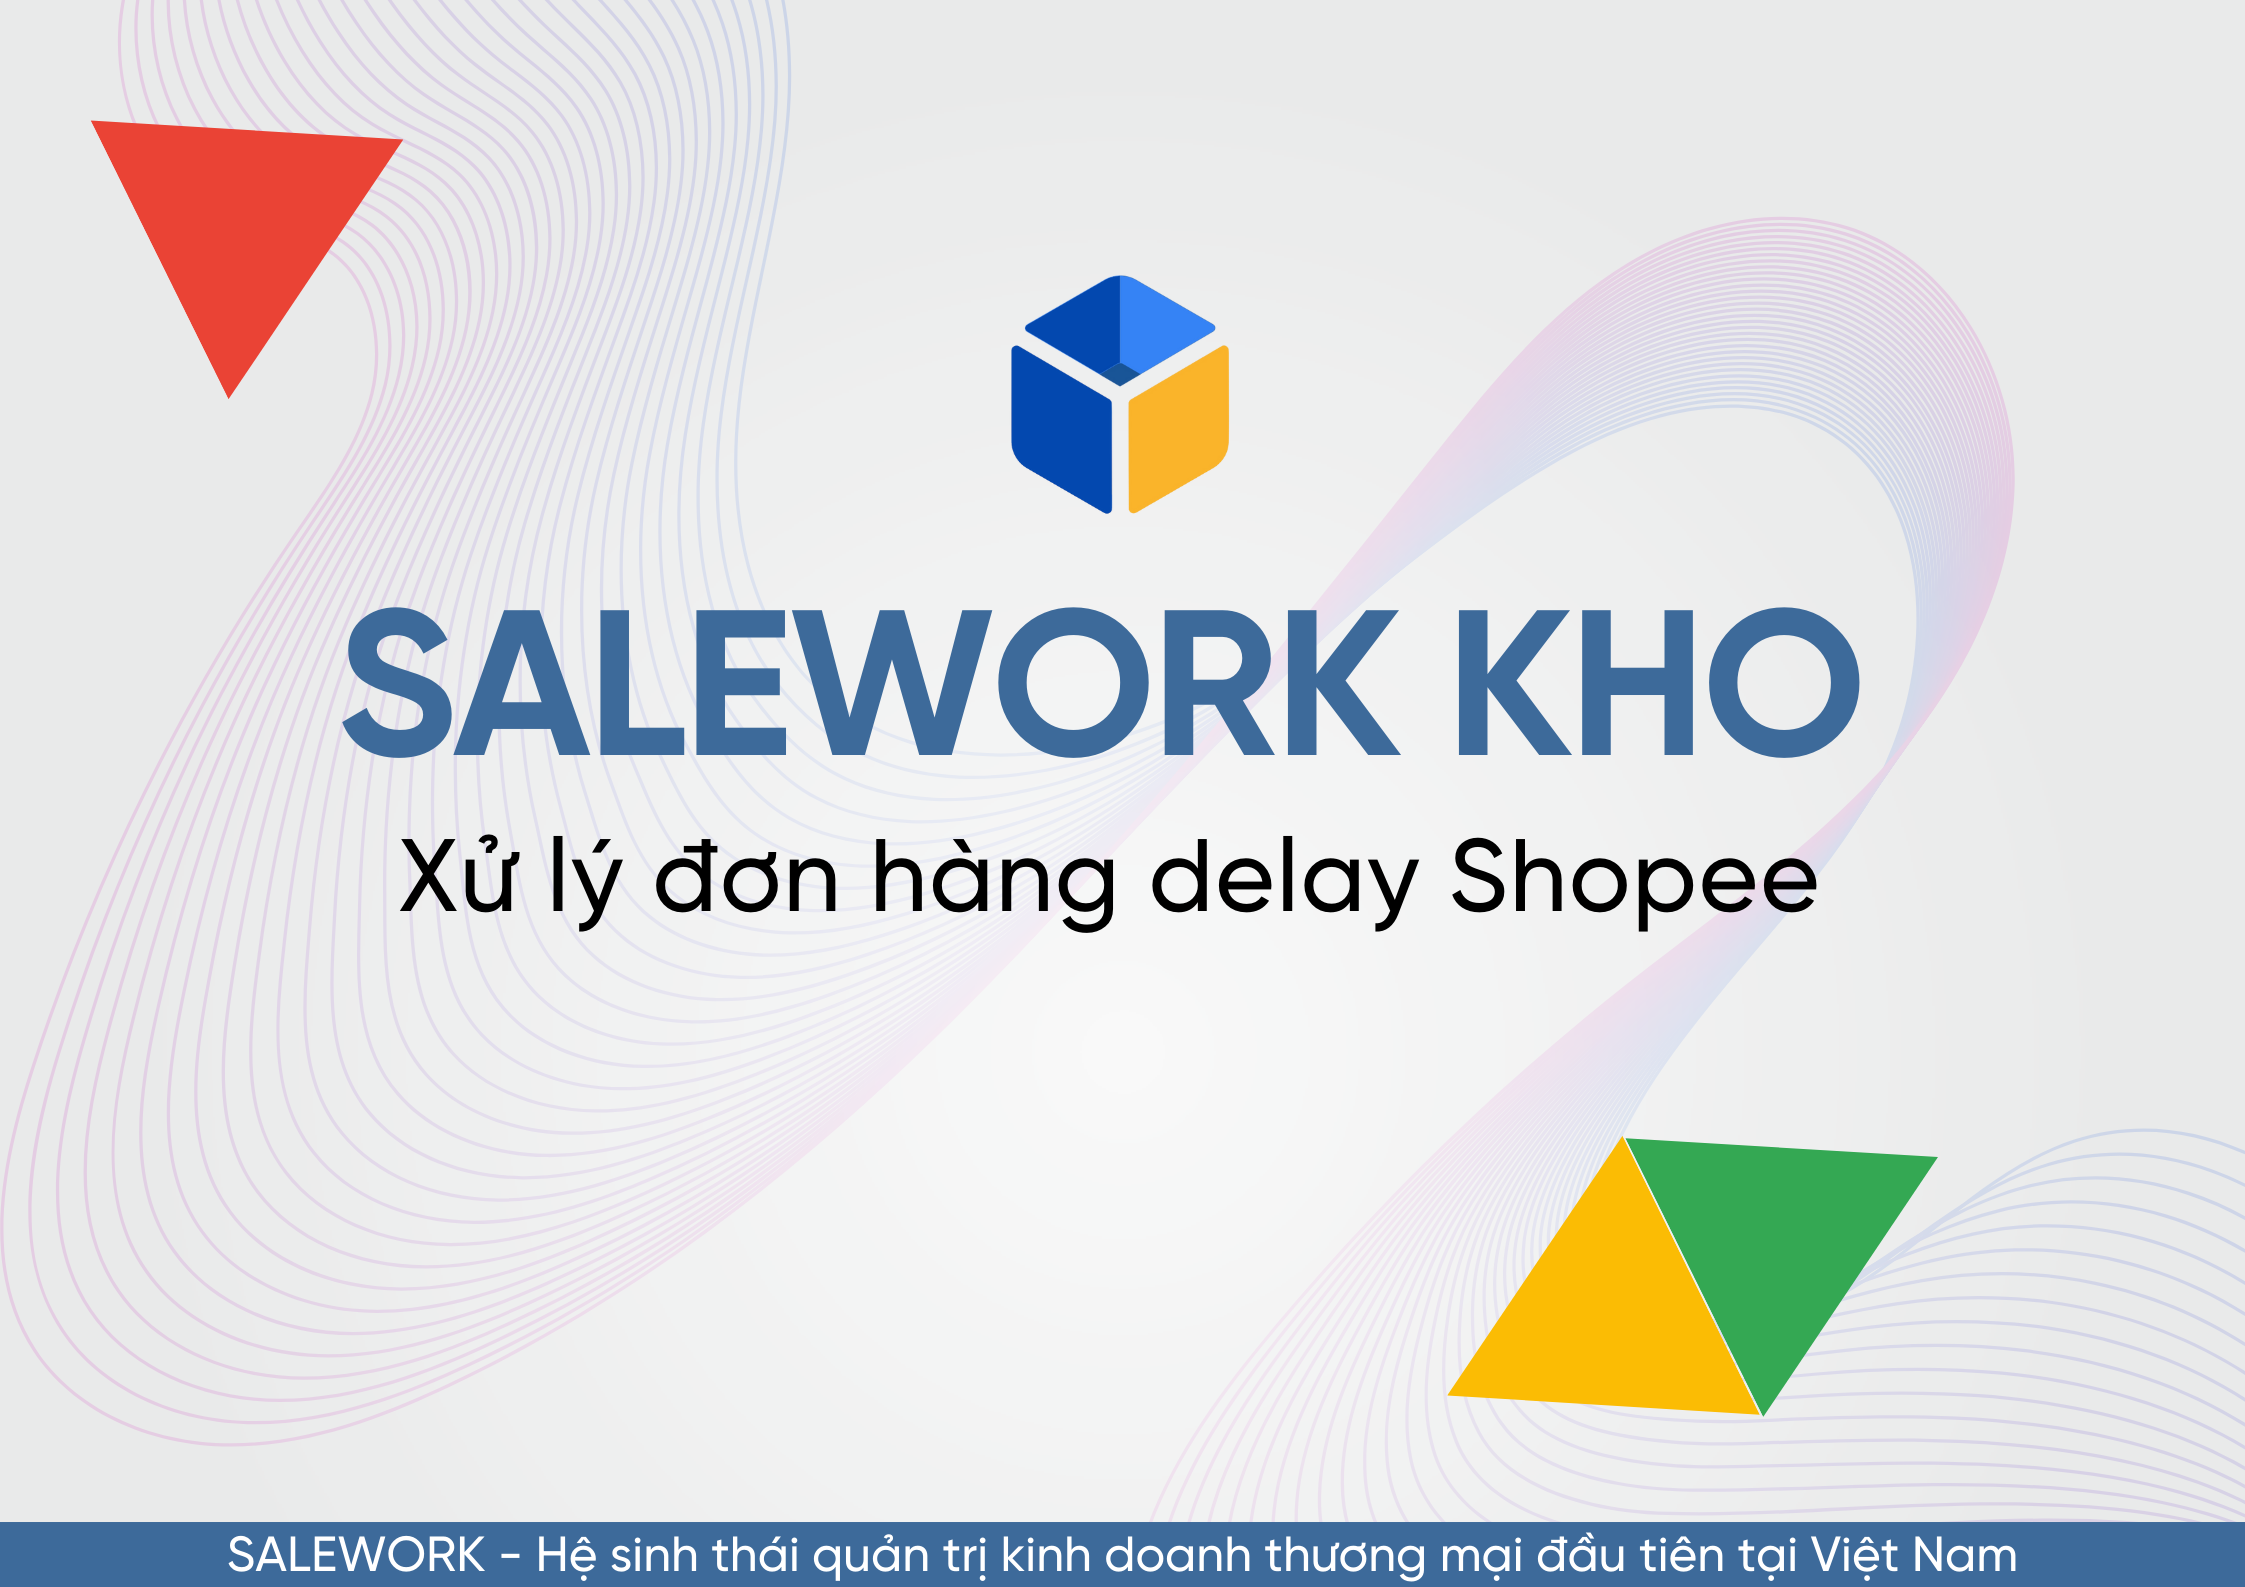 Hướng dẫn cách tìm và xử lý đơn hàng delay Shopee để giảm tỉ lệ hoàn tại Salework. - 16